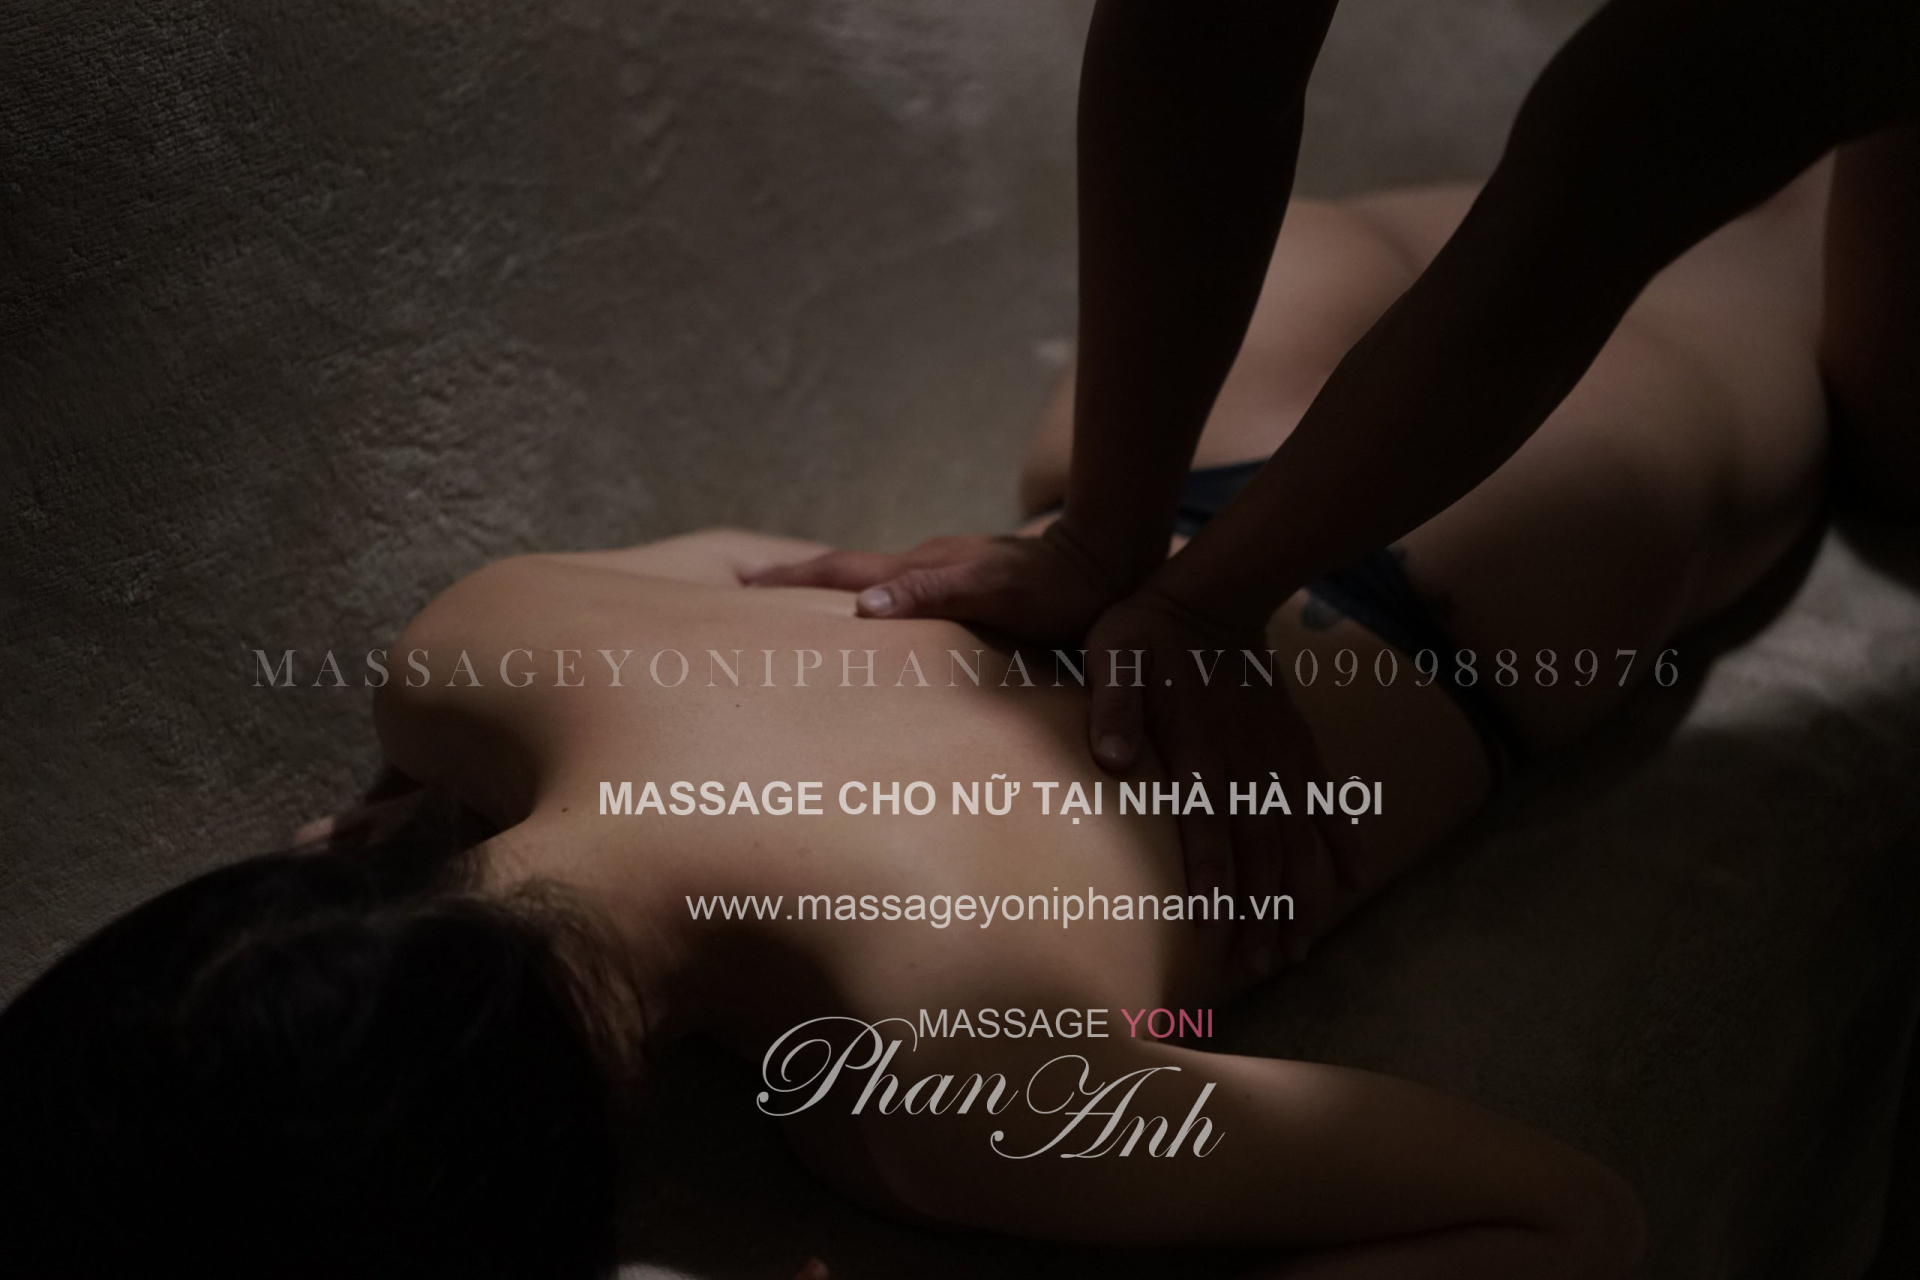 massage cho nữ tại nhà Hà Nội